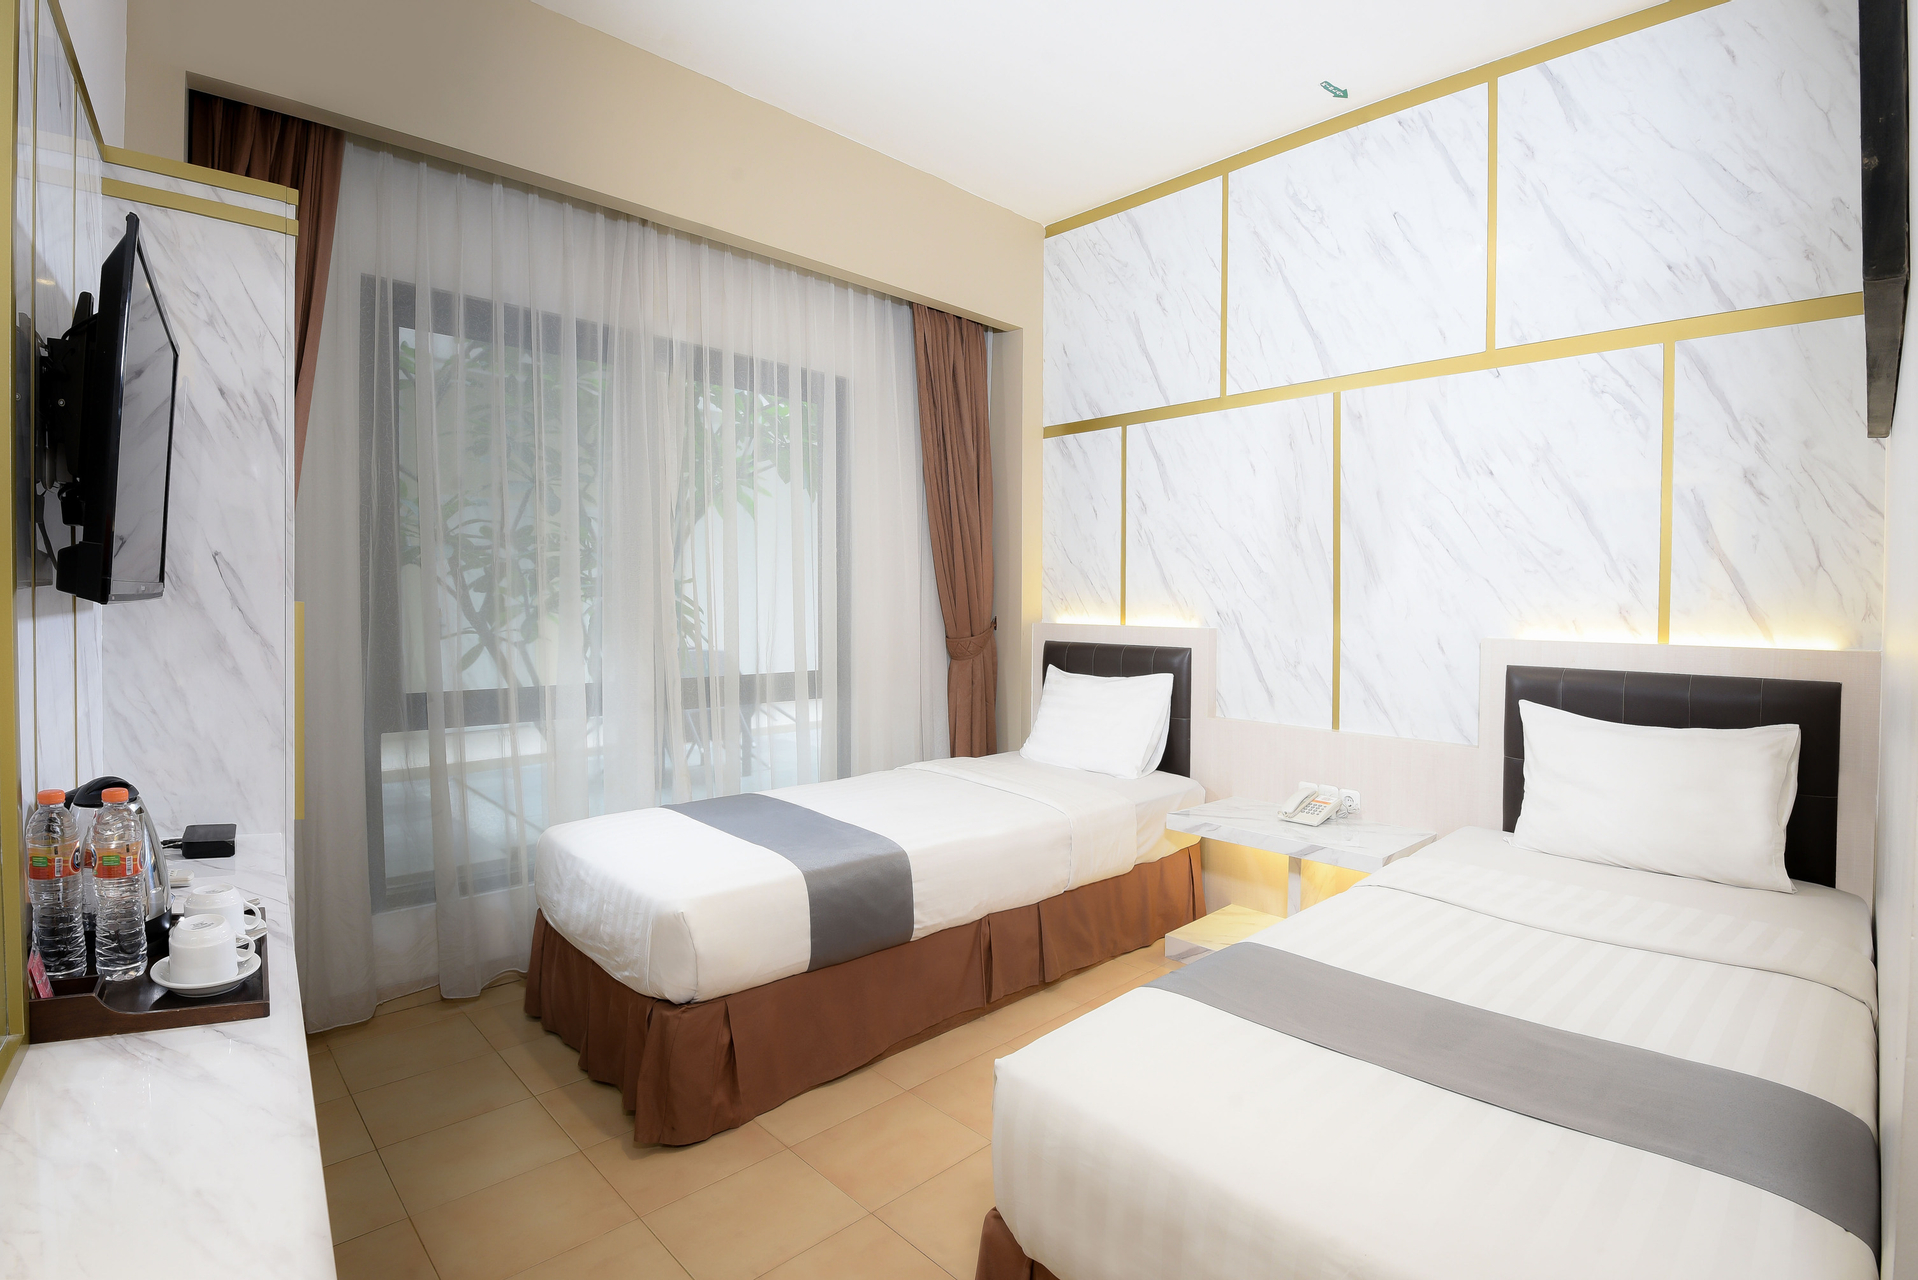 Bedroom 3, Grand Malioboro Yogyakarta Hotel, Yogyakarta